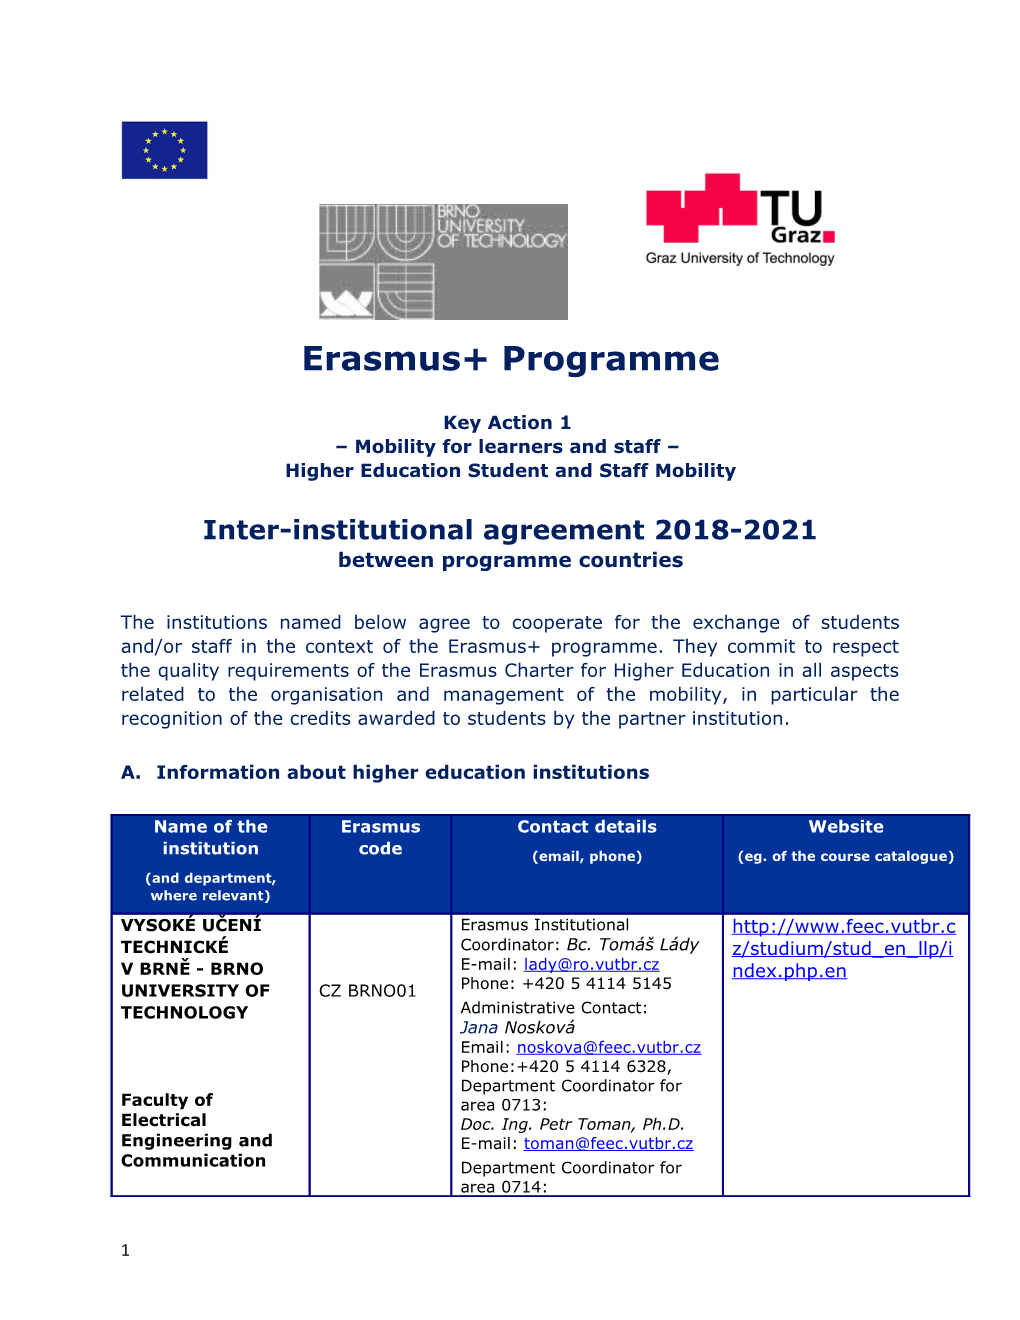 Erasmus+ Programme s4